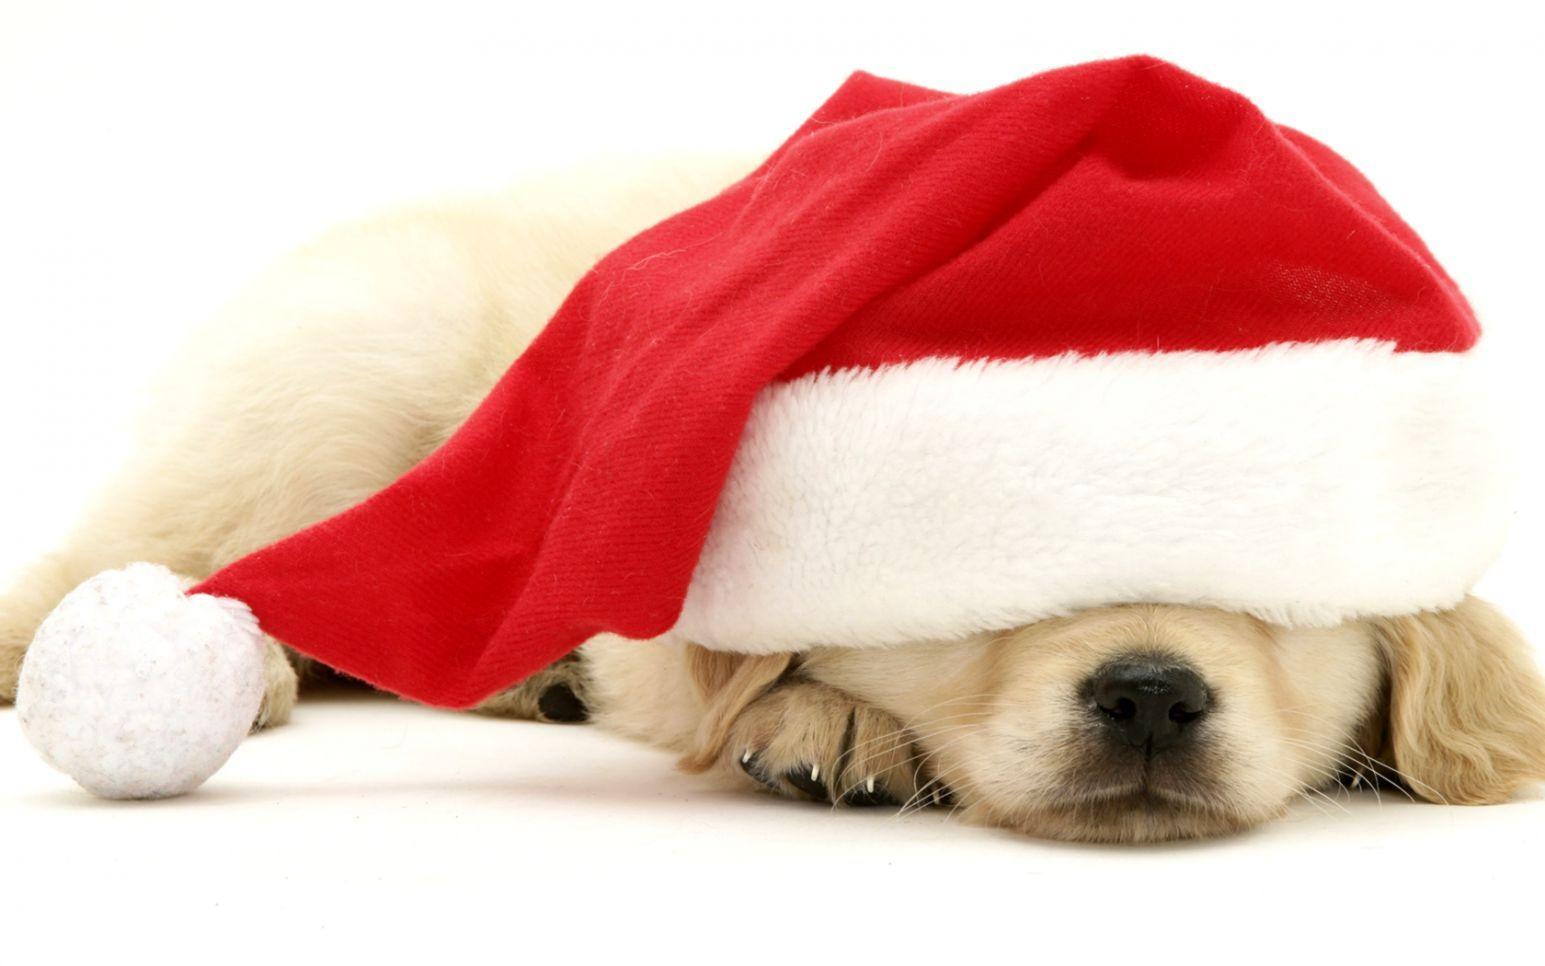 Chó con Giáng sinh: Bạn đã thấy bao giờ hình ảnh của một chú chó con đáng yêu trong trang phục Giáng sinh chưa? Hãy cùng xem hình ảnh này với chú chó đáng yêu bạn nhé! Hình ảnh của chú chó con trong trang phục Giáng sinh sẽ làm cho bạn cảm thấy ấm cúng và hạnh phúc trong mùa lễ hội.